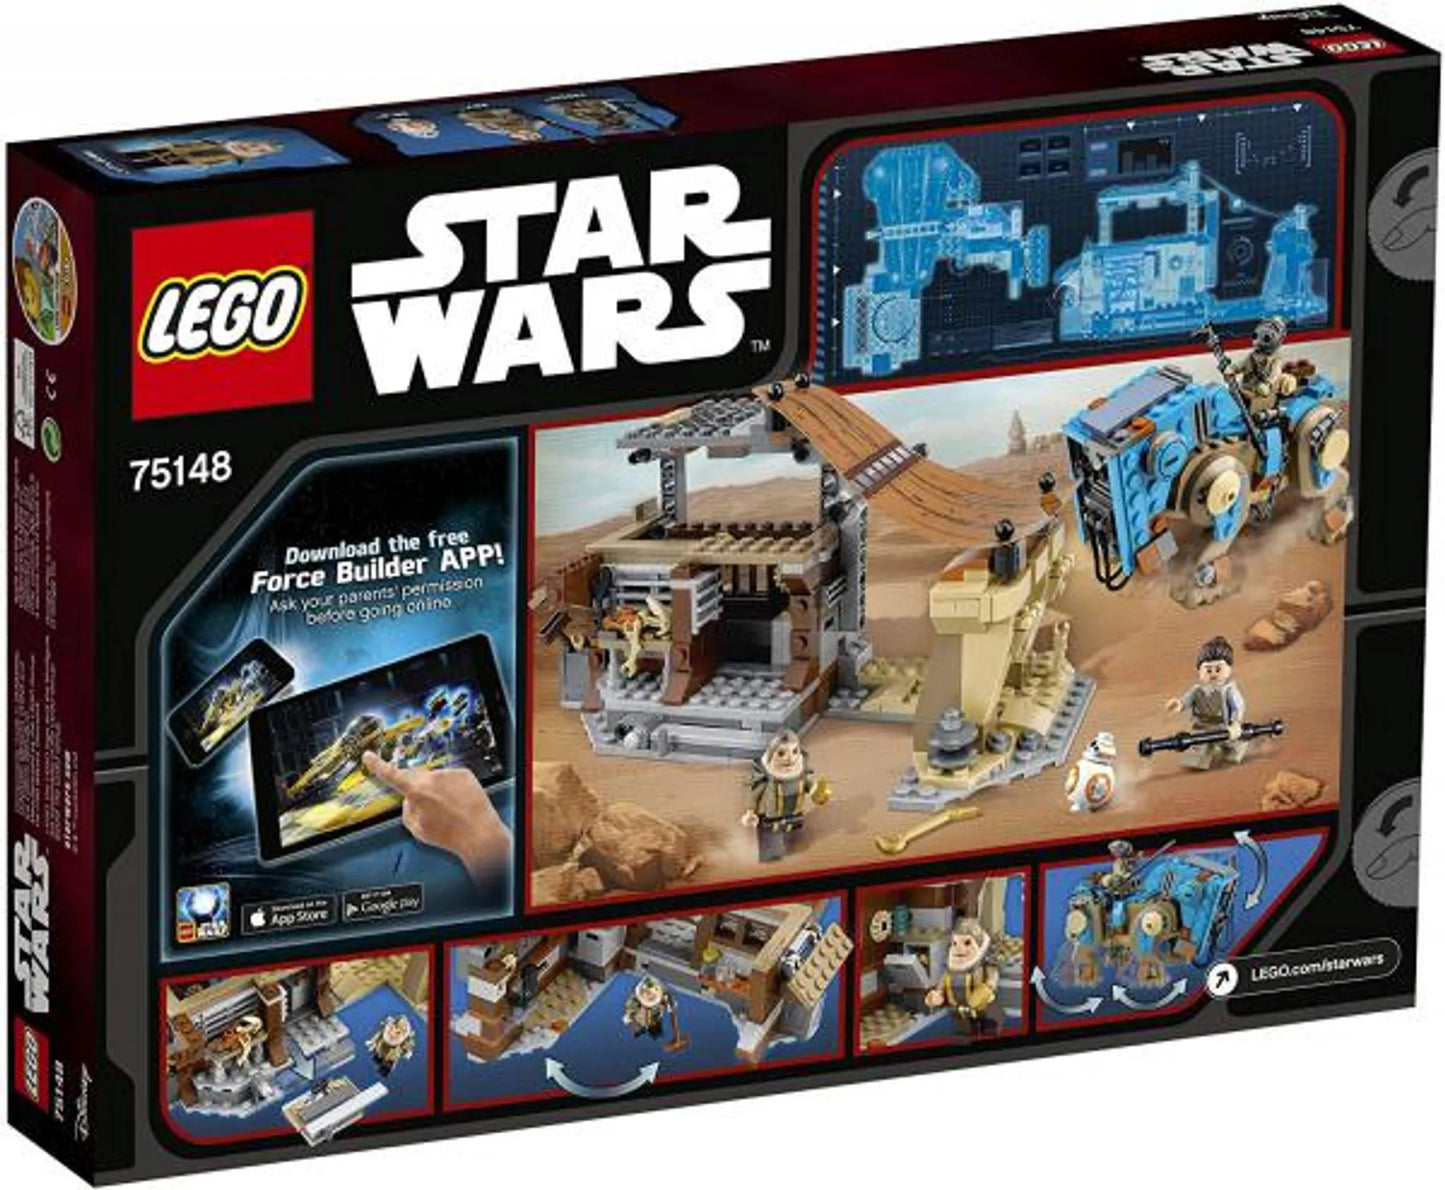 LEGO® EOL Star Wars 75148 Encounter on Jakku™